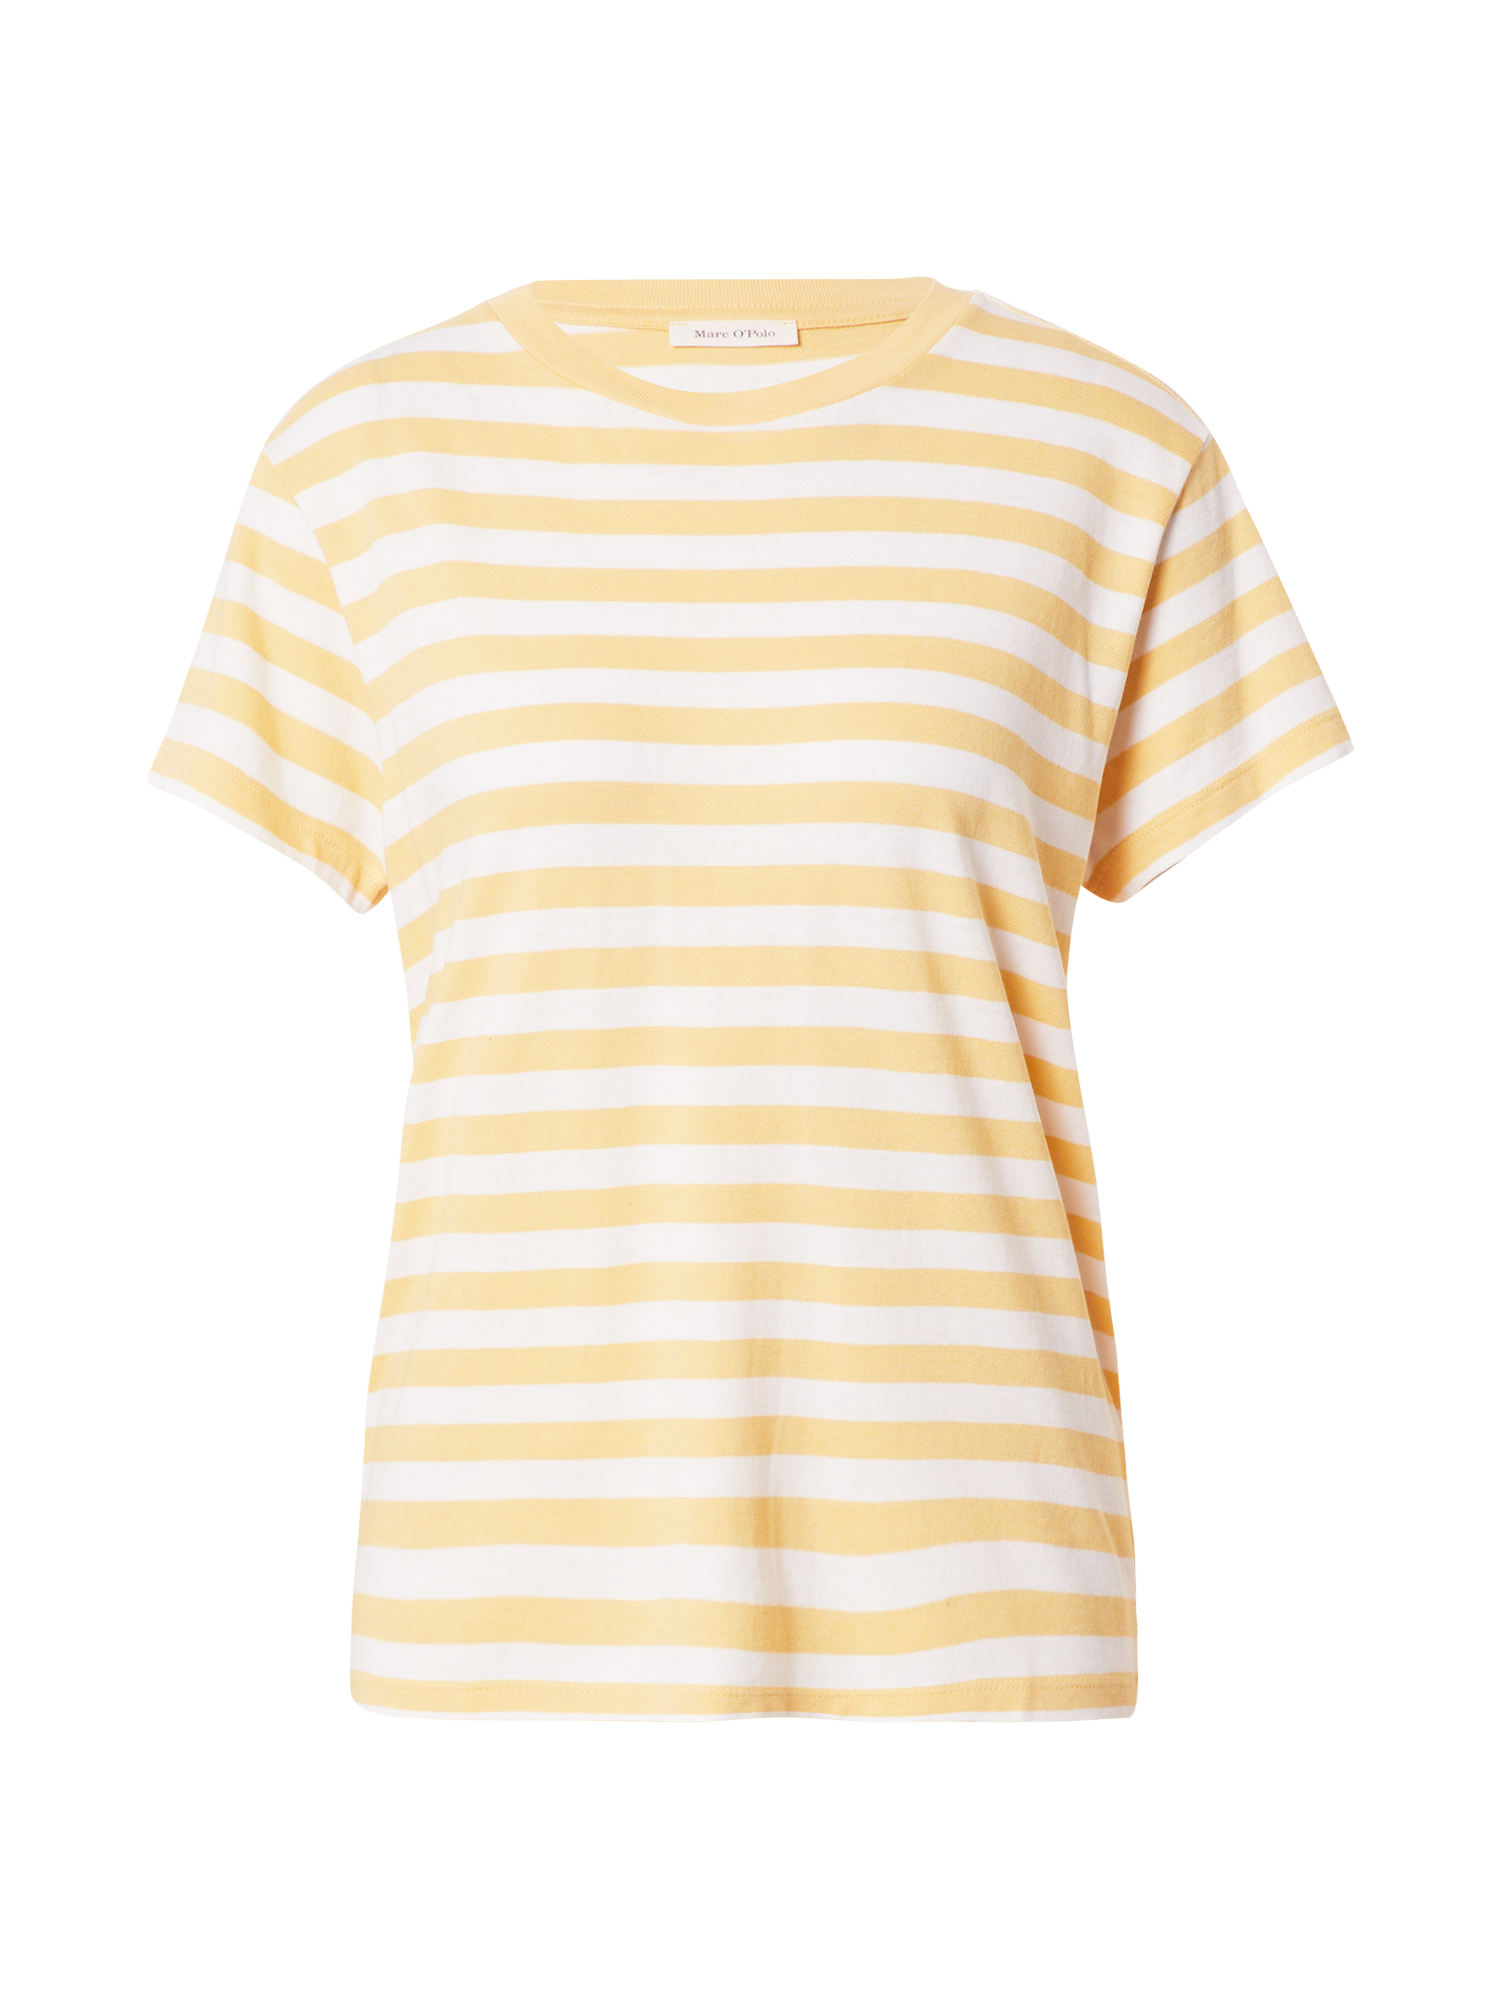 Odzież Kobiety Marc OPolo Koszulka w kolorze Żółtym 